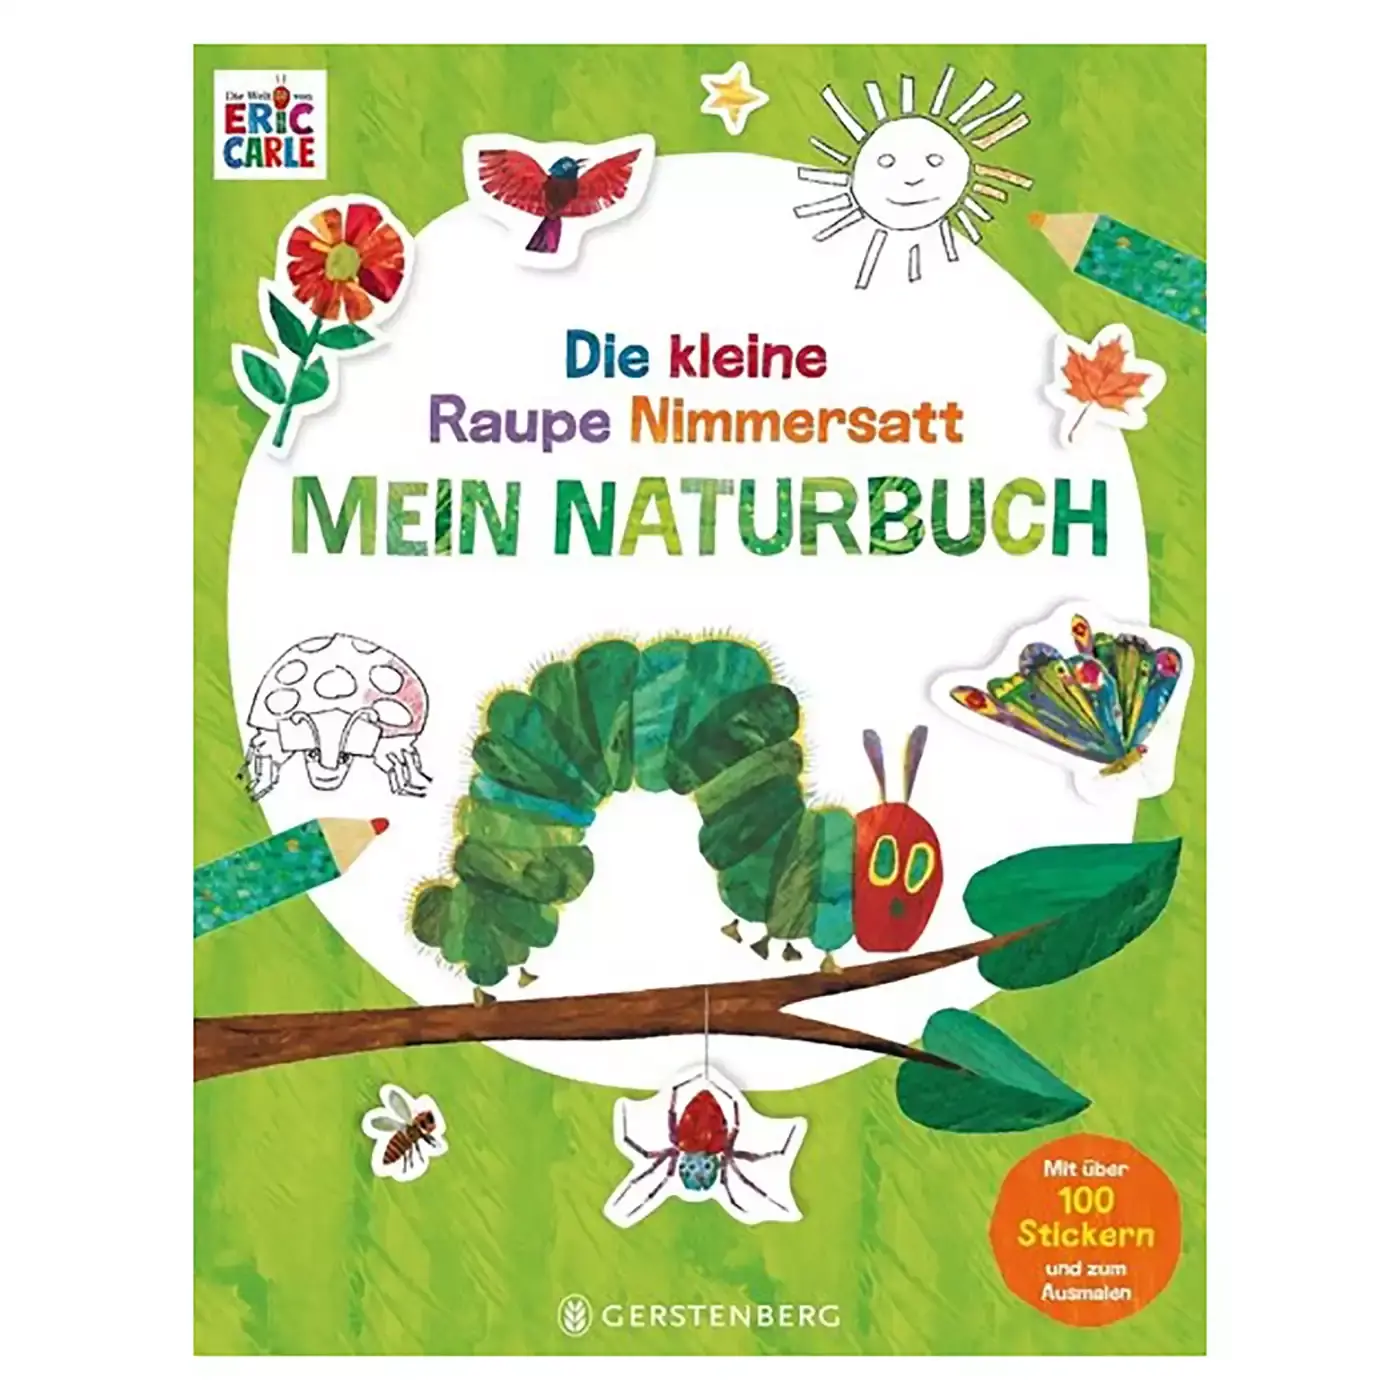 Die kleine Raupe Nimmersatt - Mein Naturbuch Gerstenberg 2000579307805 3